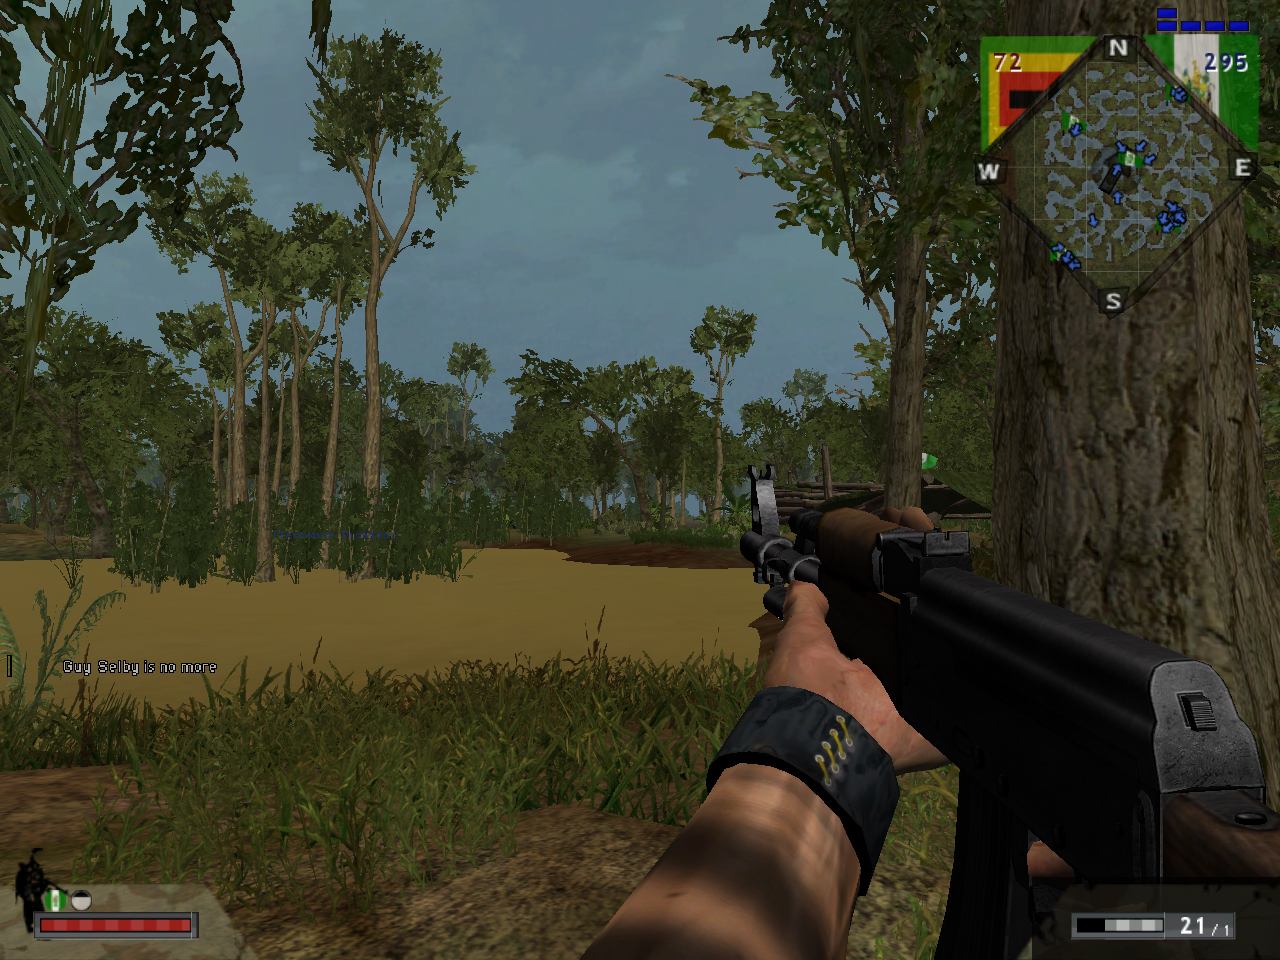 AK-47 New version image - Rhodesian Bush War mod for Battlefield Vietnam